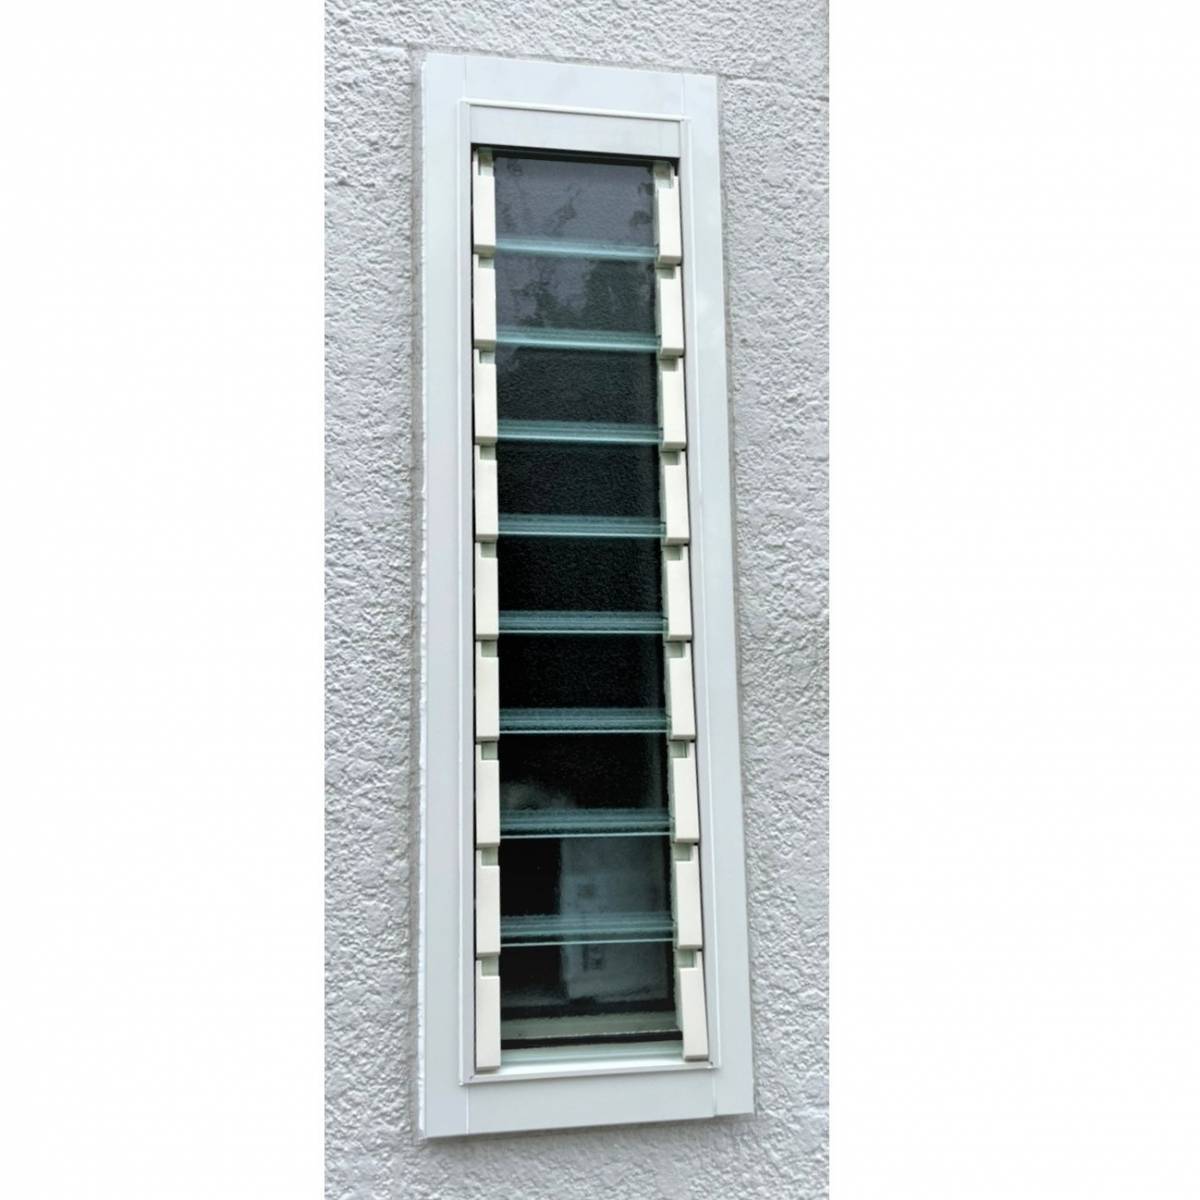 窓工房テラムラの性能の良いルーバー窓に交換したいの施工後の写真1